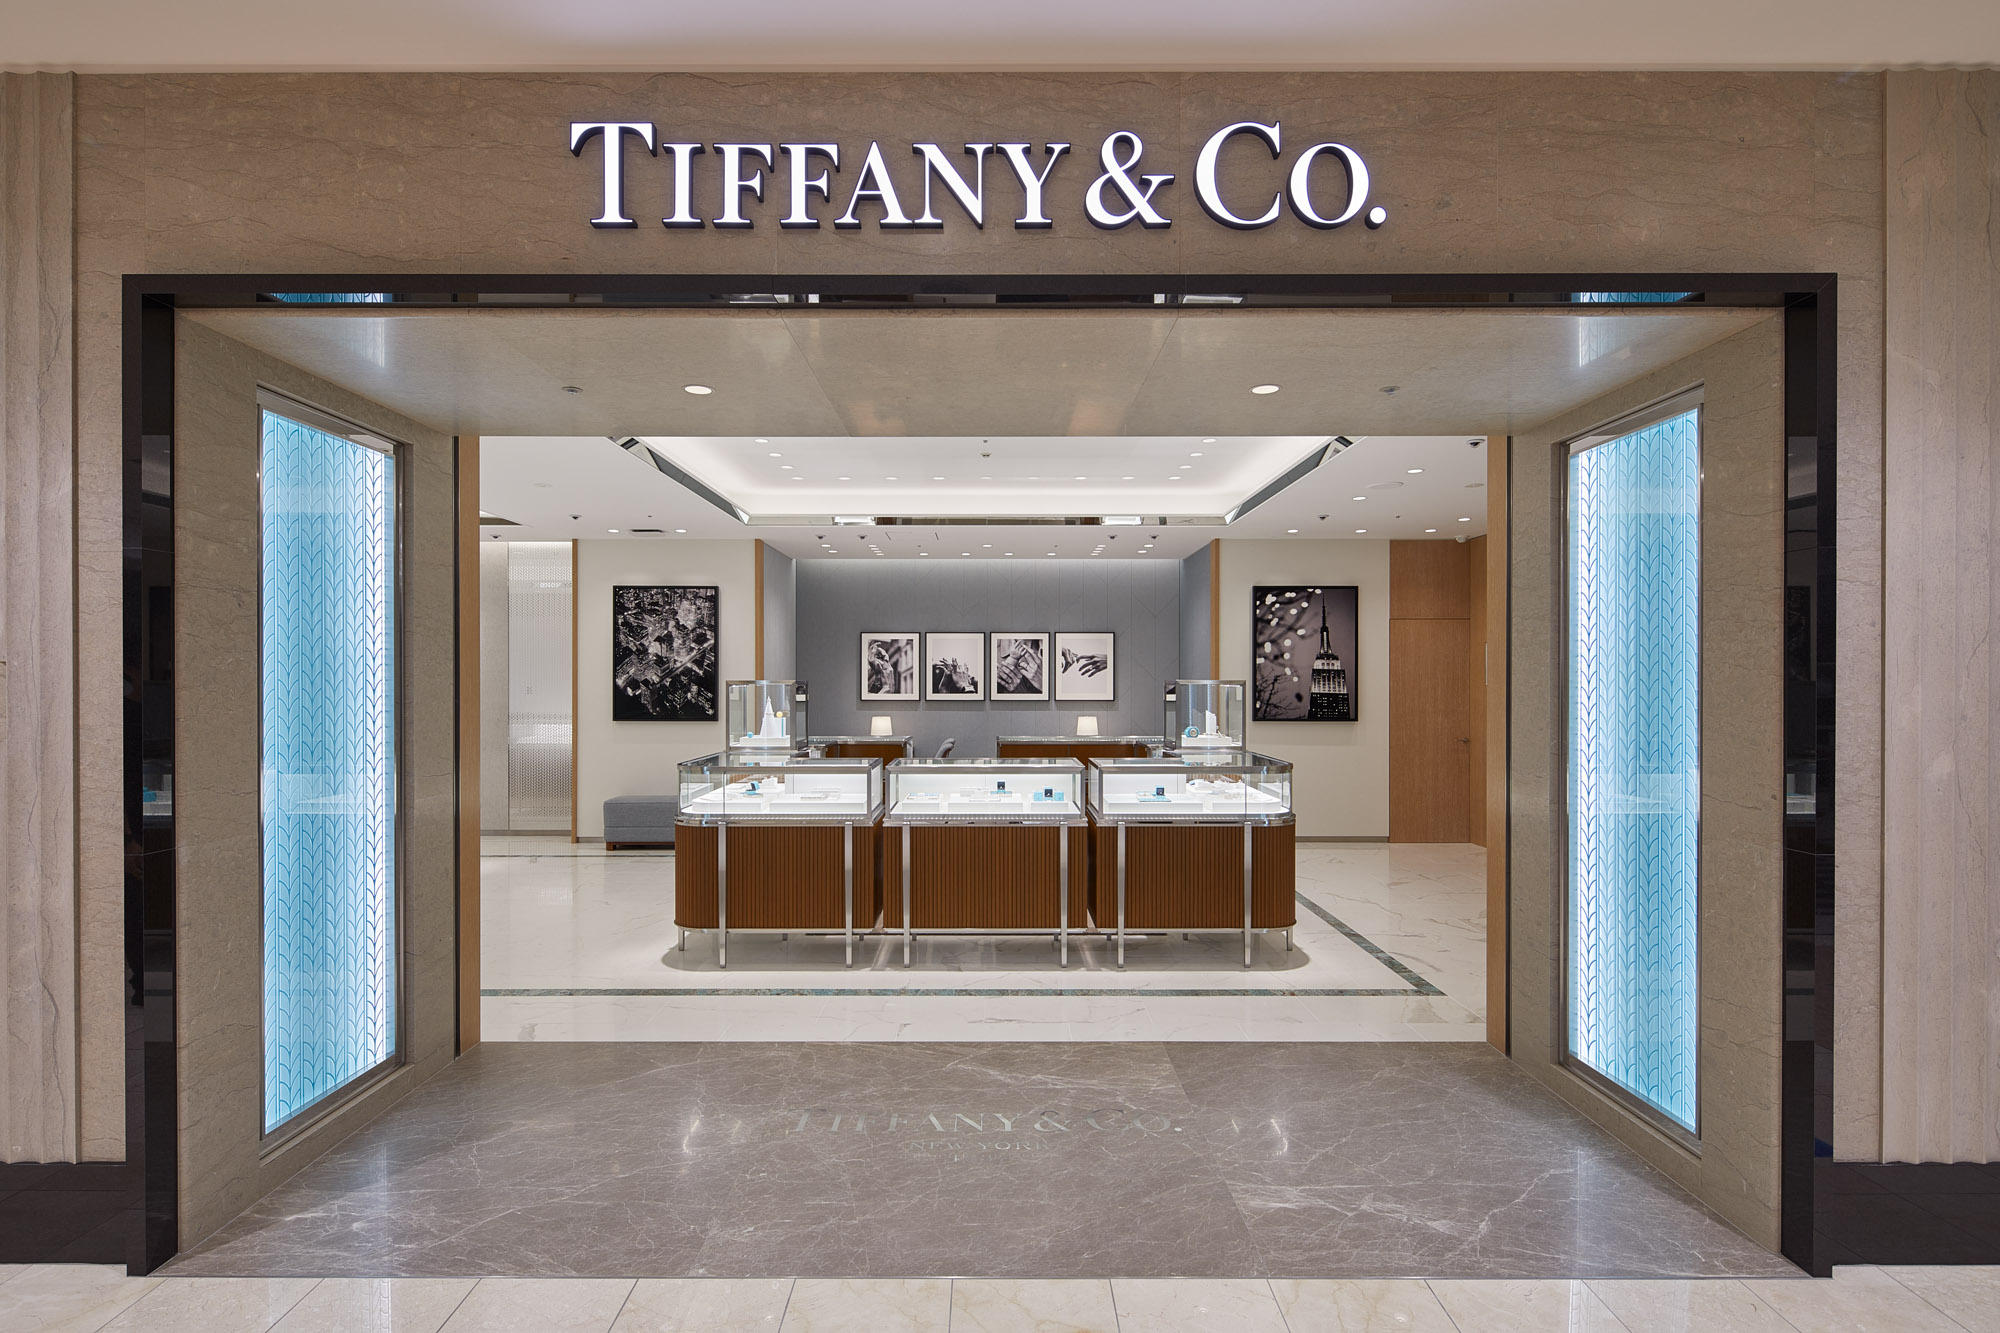 Images Tiffany & Co. Izutsuya Kokura